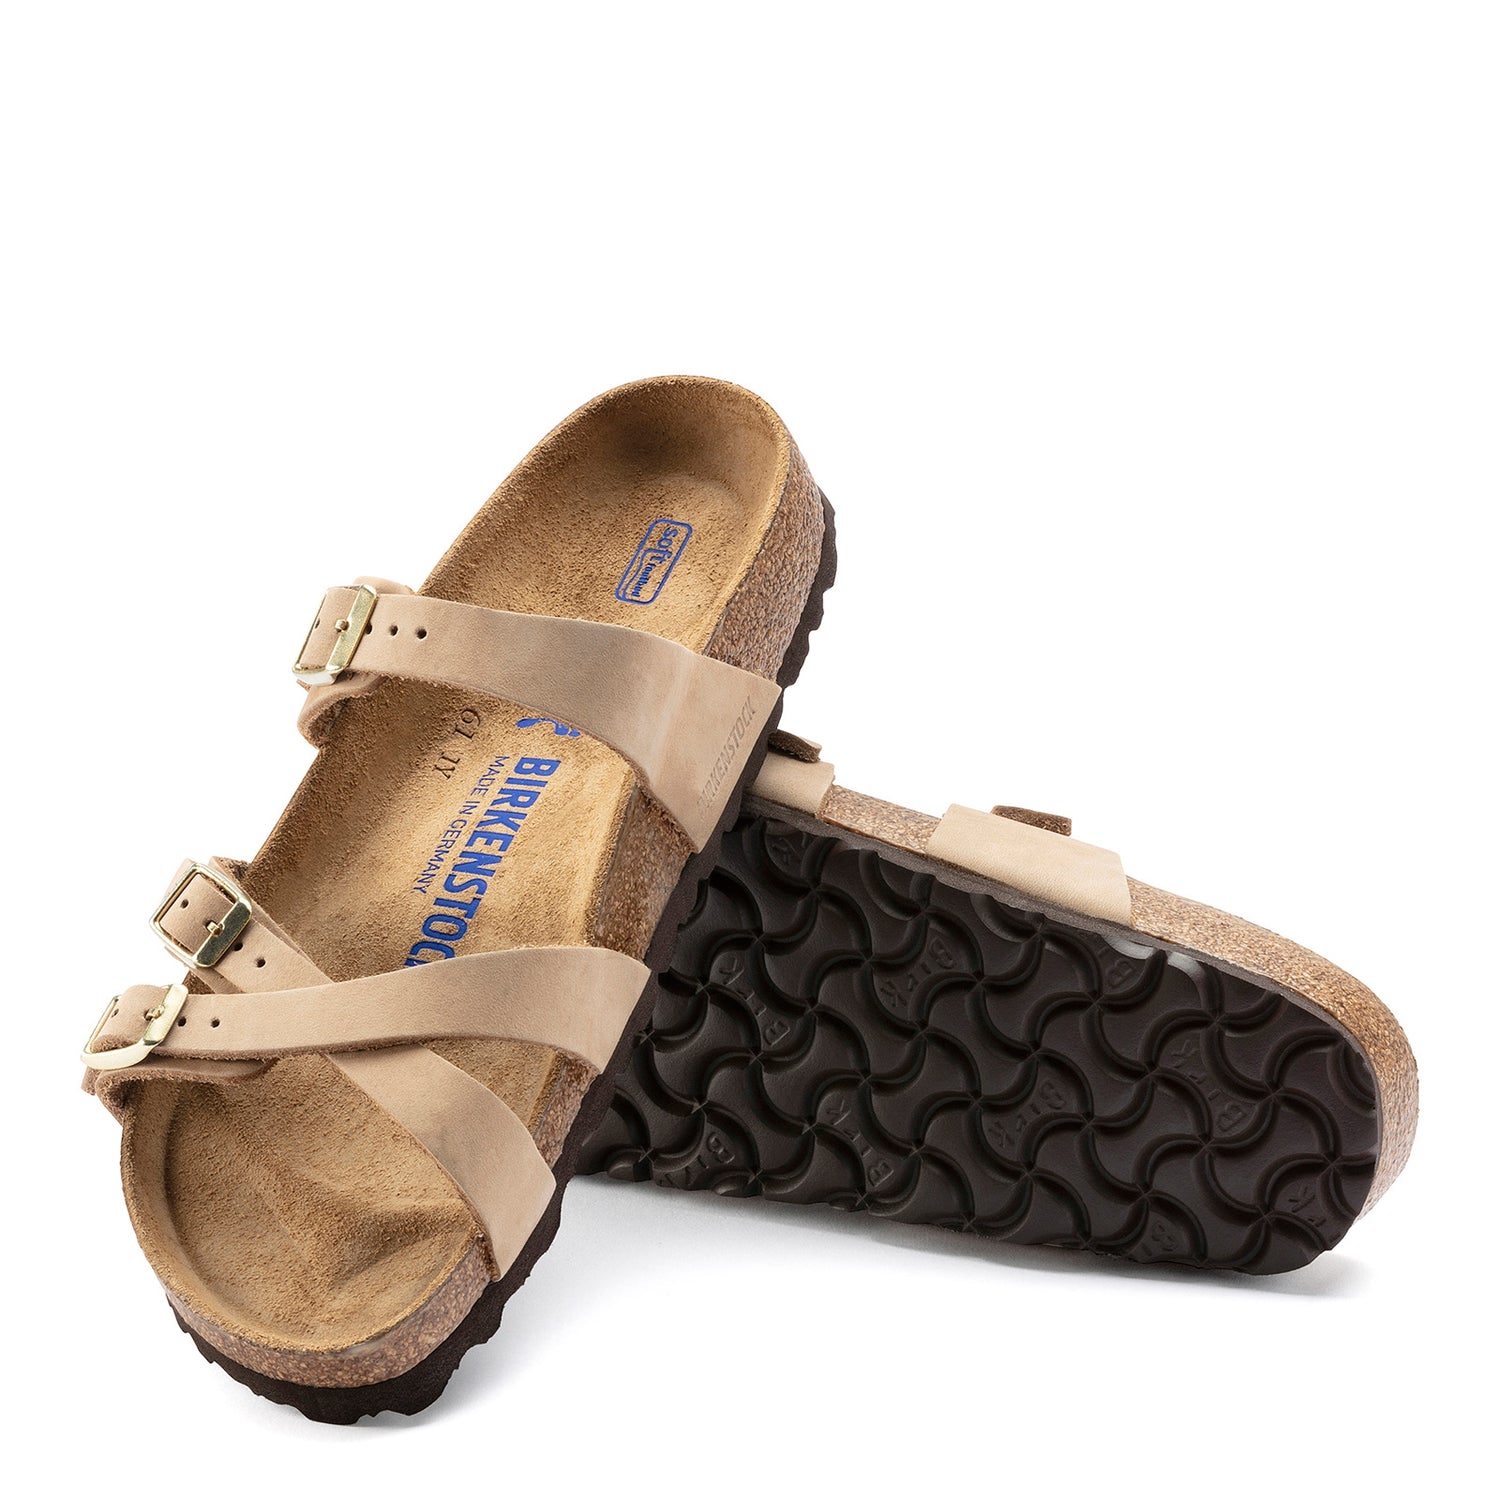 Peltz Shoes  Women's Birkenstock Franca Soft Footbed Sandal - Narrow Width SANDCASTLE 1022 973 N